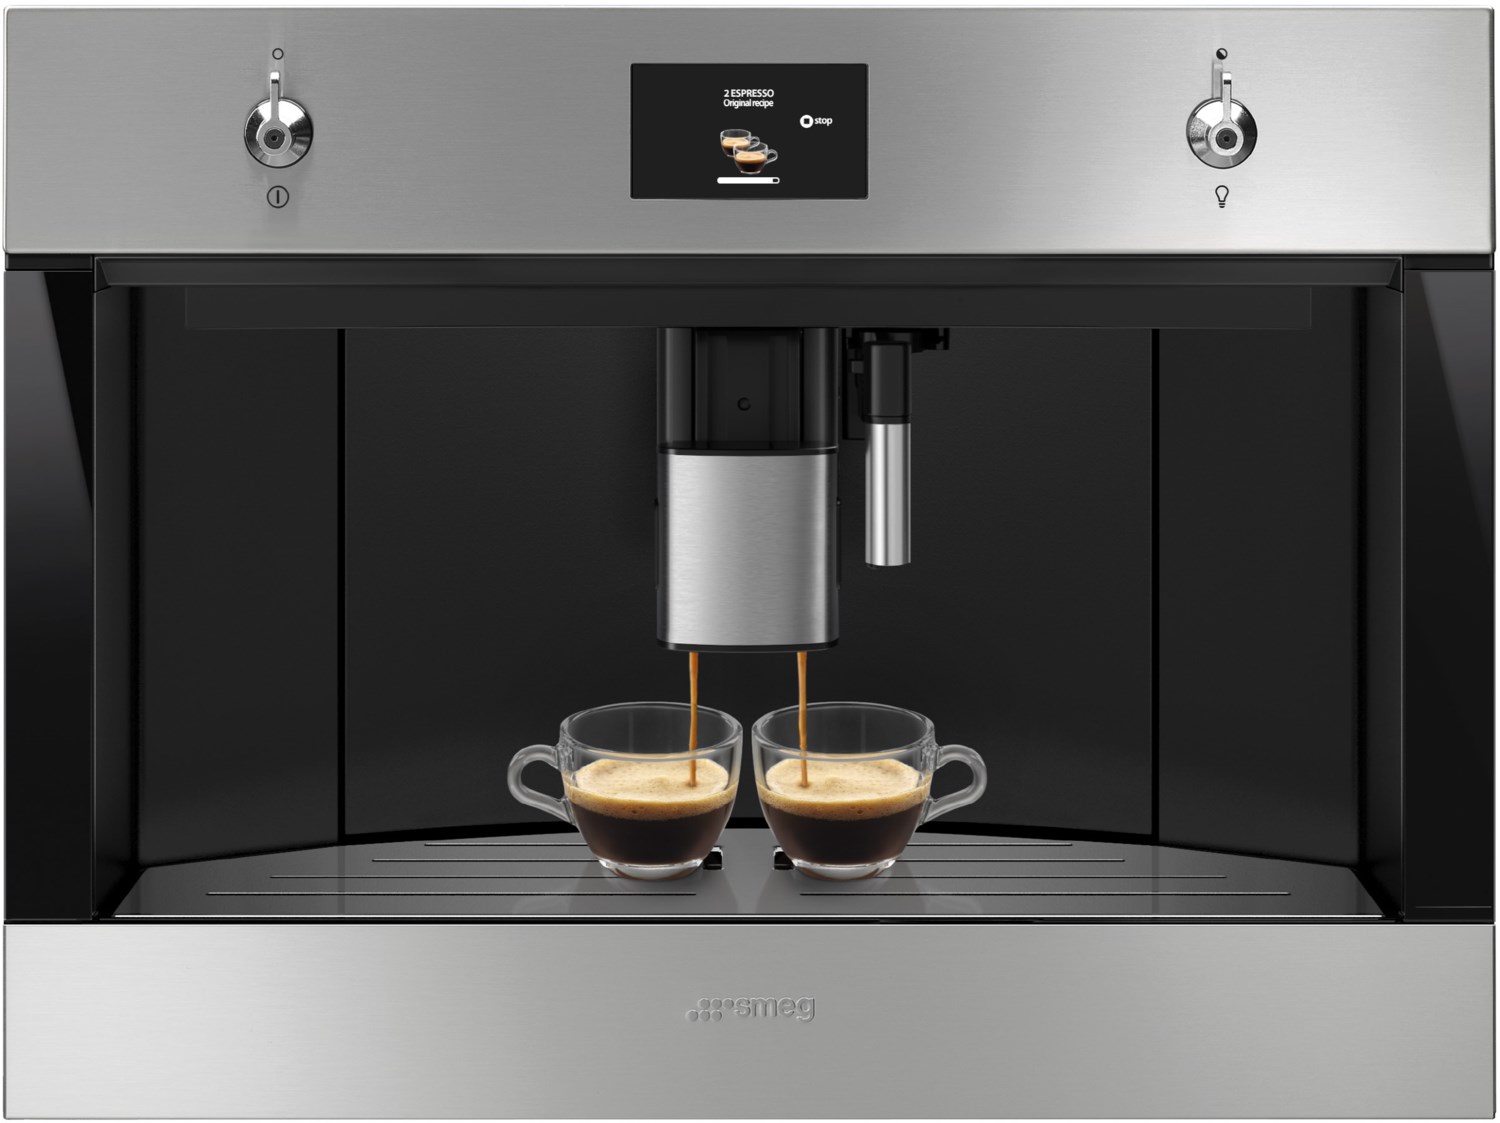 CMS4303X Einbau-Kaffee-Vollautomat edelstahl/cleansteel von Smeg